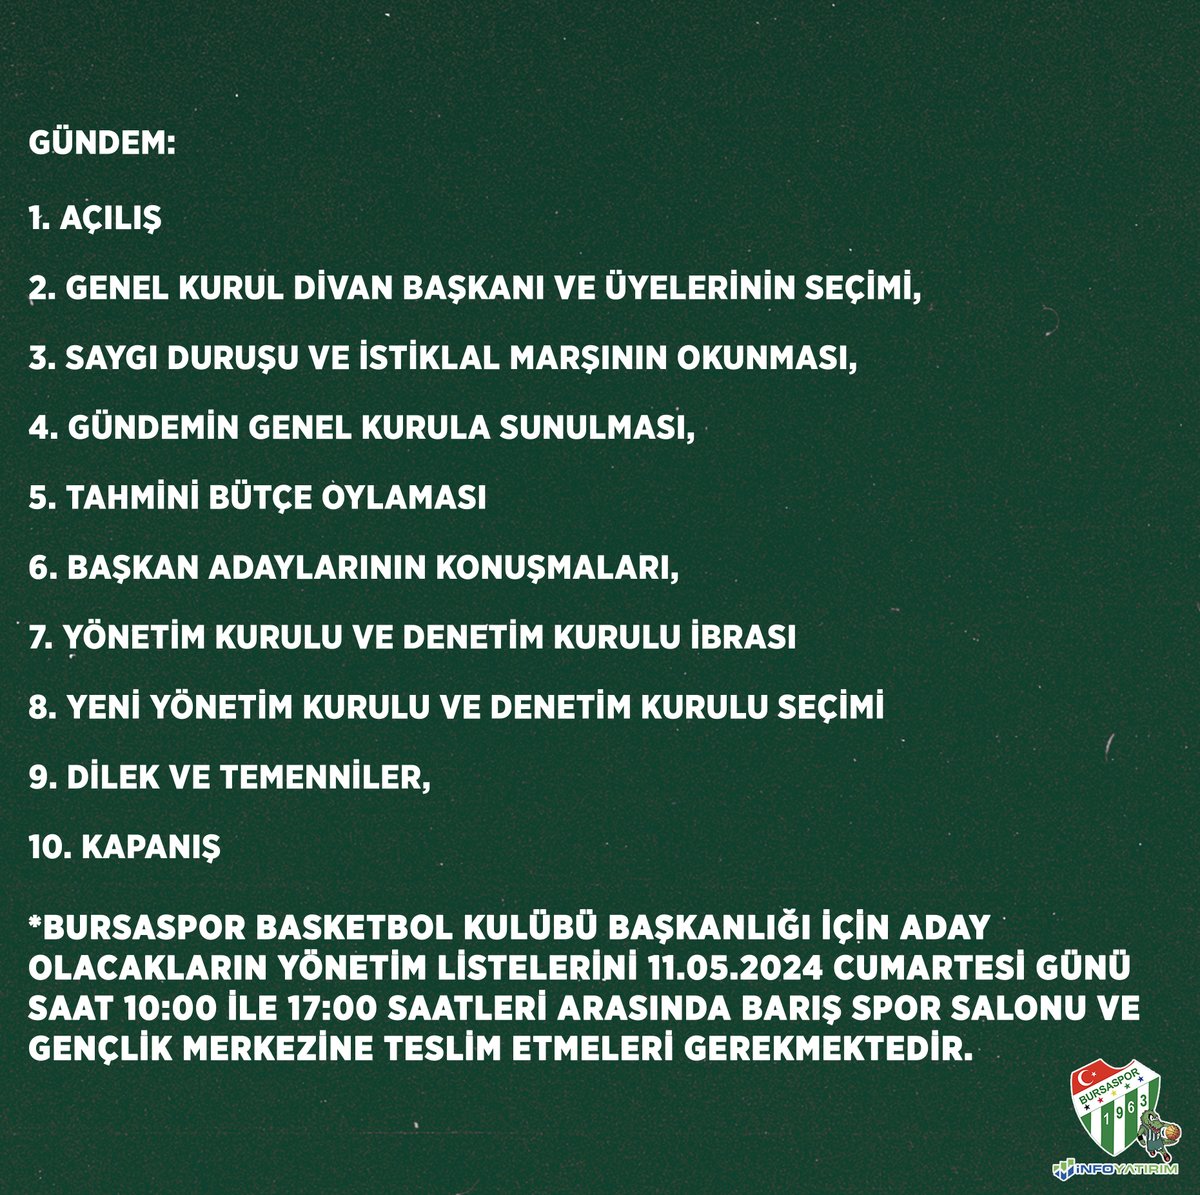 Bursaspor Basketbol Kulübü'nün Seçimli Olağan Genel Kurulu I. Toplantısı 18.05.2024 Cumartesi günü saat 15:00’te Barış Gençlik ve Spor Salonu'nda yapılacaktır.

İlk genel kurul oturumunda yeterli çoğunluğun sağlanmaması durumunda II. Toplantı 25.05.2024 Cumartesi günü saat…